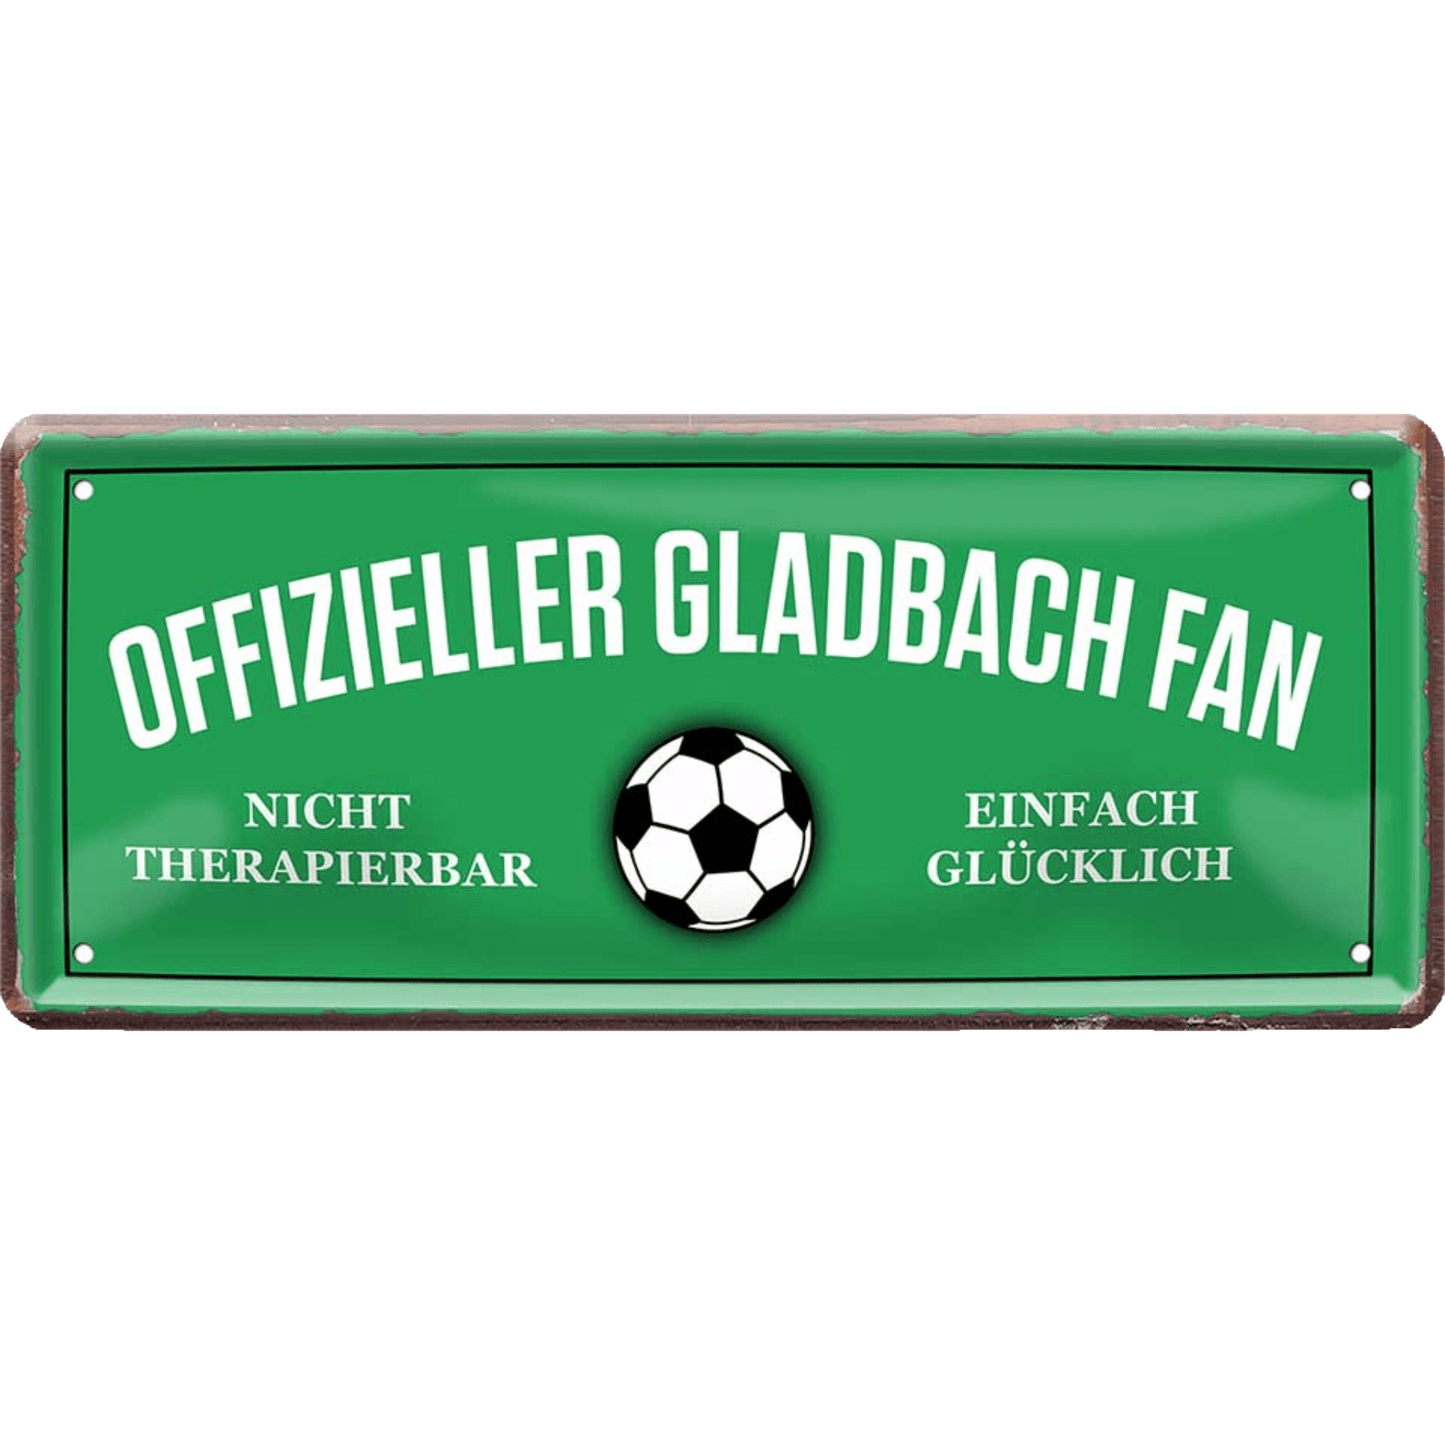 Mönchengladbach Fanartikel Blechschilder - Man Cave Germany 28 x 12 cm (Offizieller Gladbach Fan) Blechschild